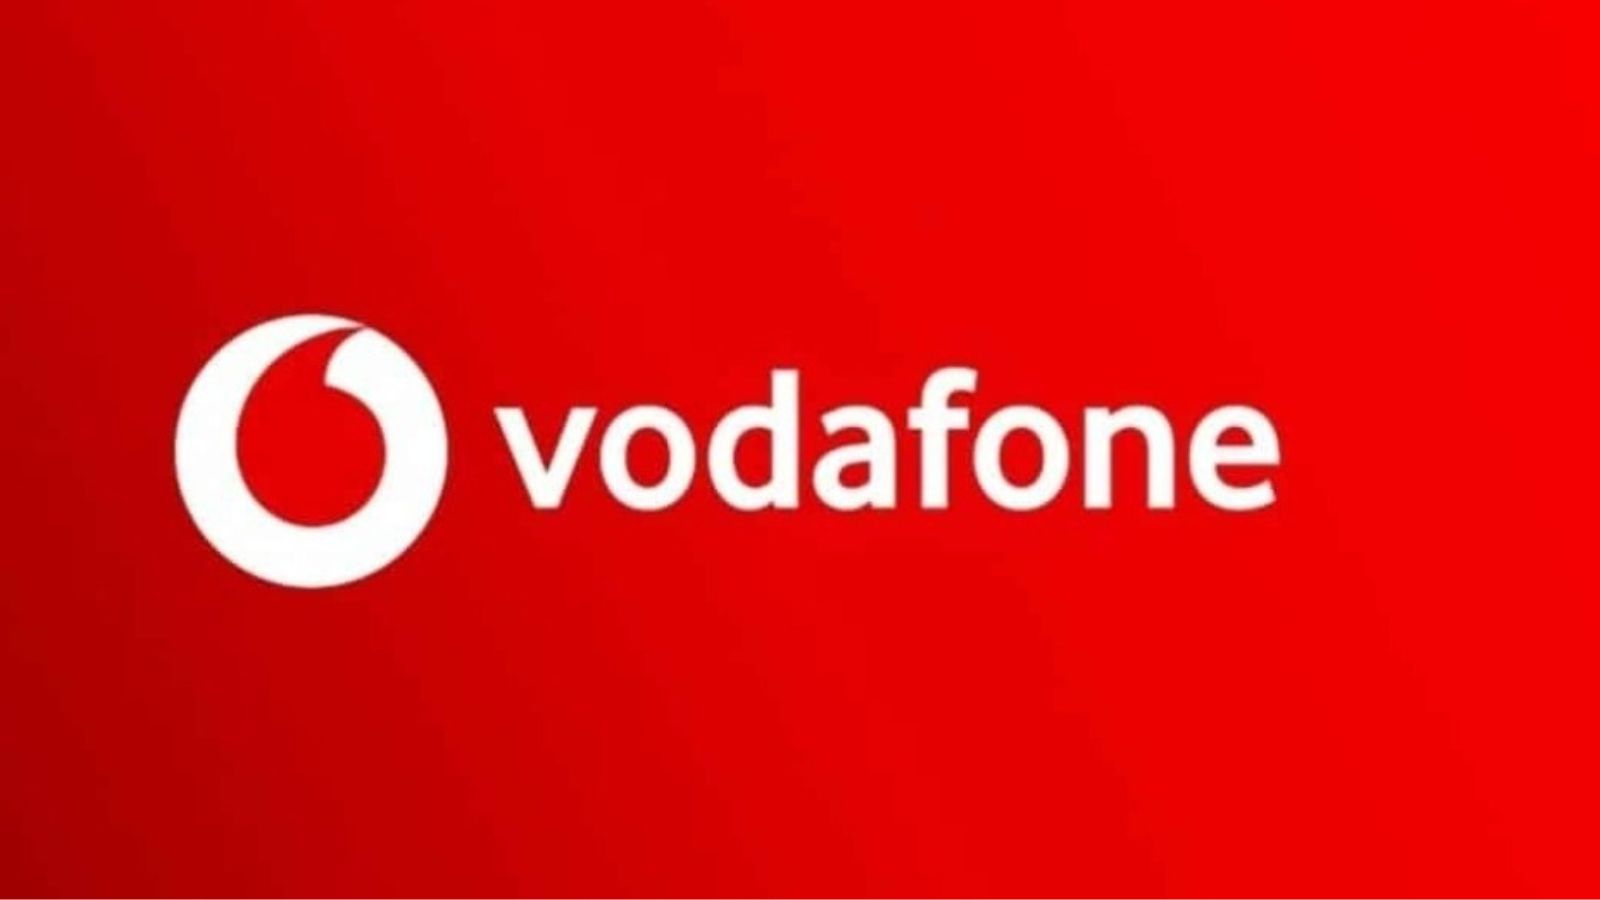 Vodafone offerte operator attack